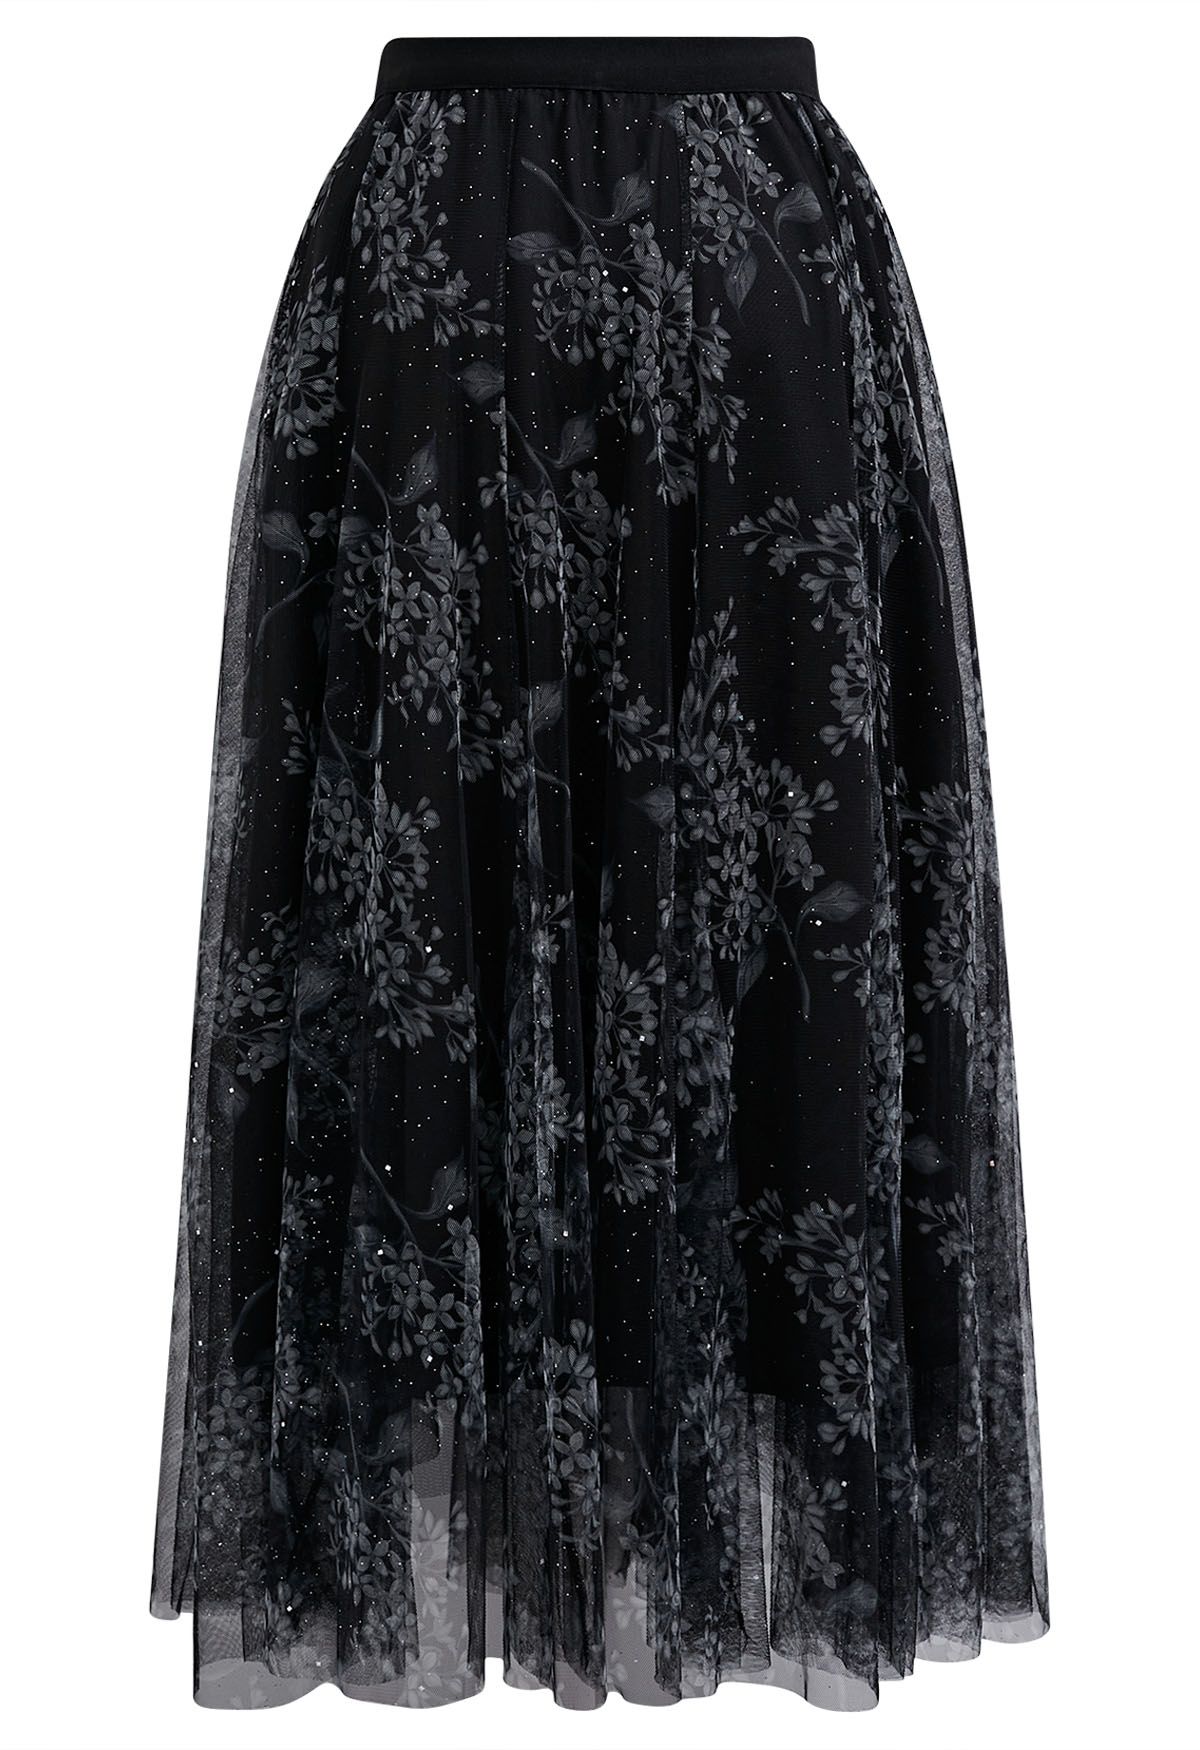 Shimmer Floral Mesh Tulle Midi Skirt in Black